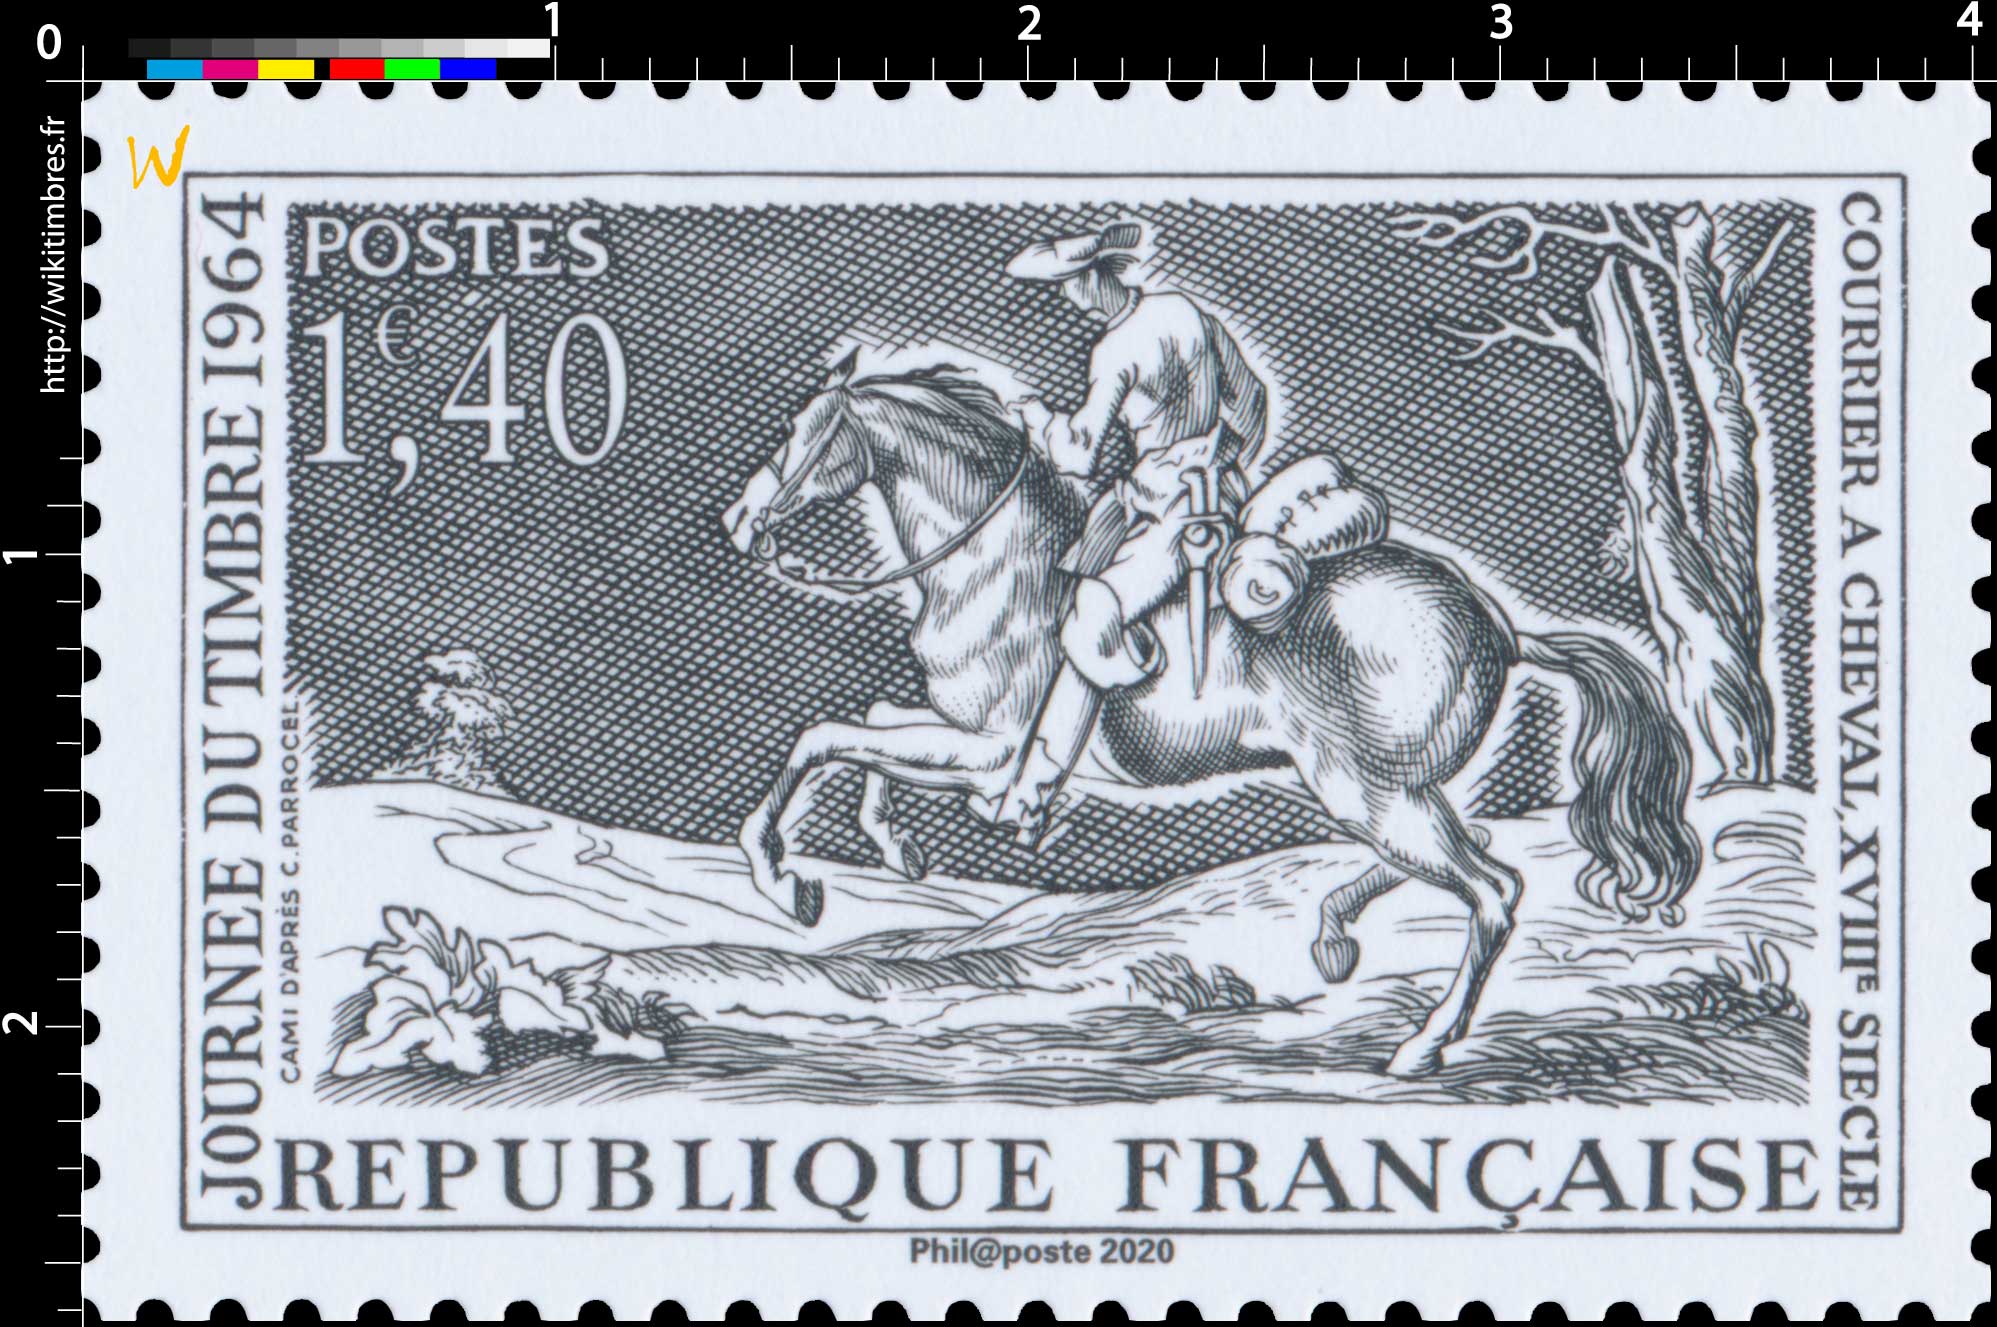 2020 Patrimoine de France - JOURNÉE DU TIMBRE 1964 COURRIER A CHEVAL, XVIIIe SIÈCLE